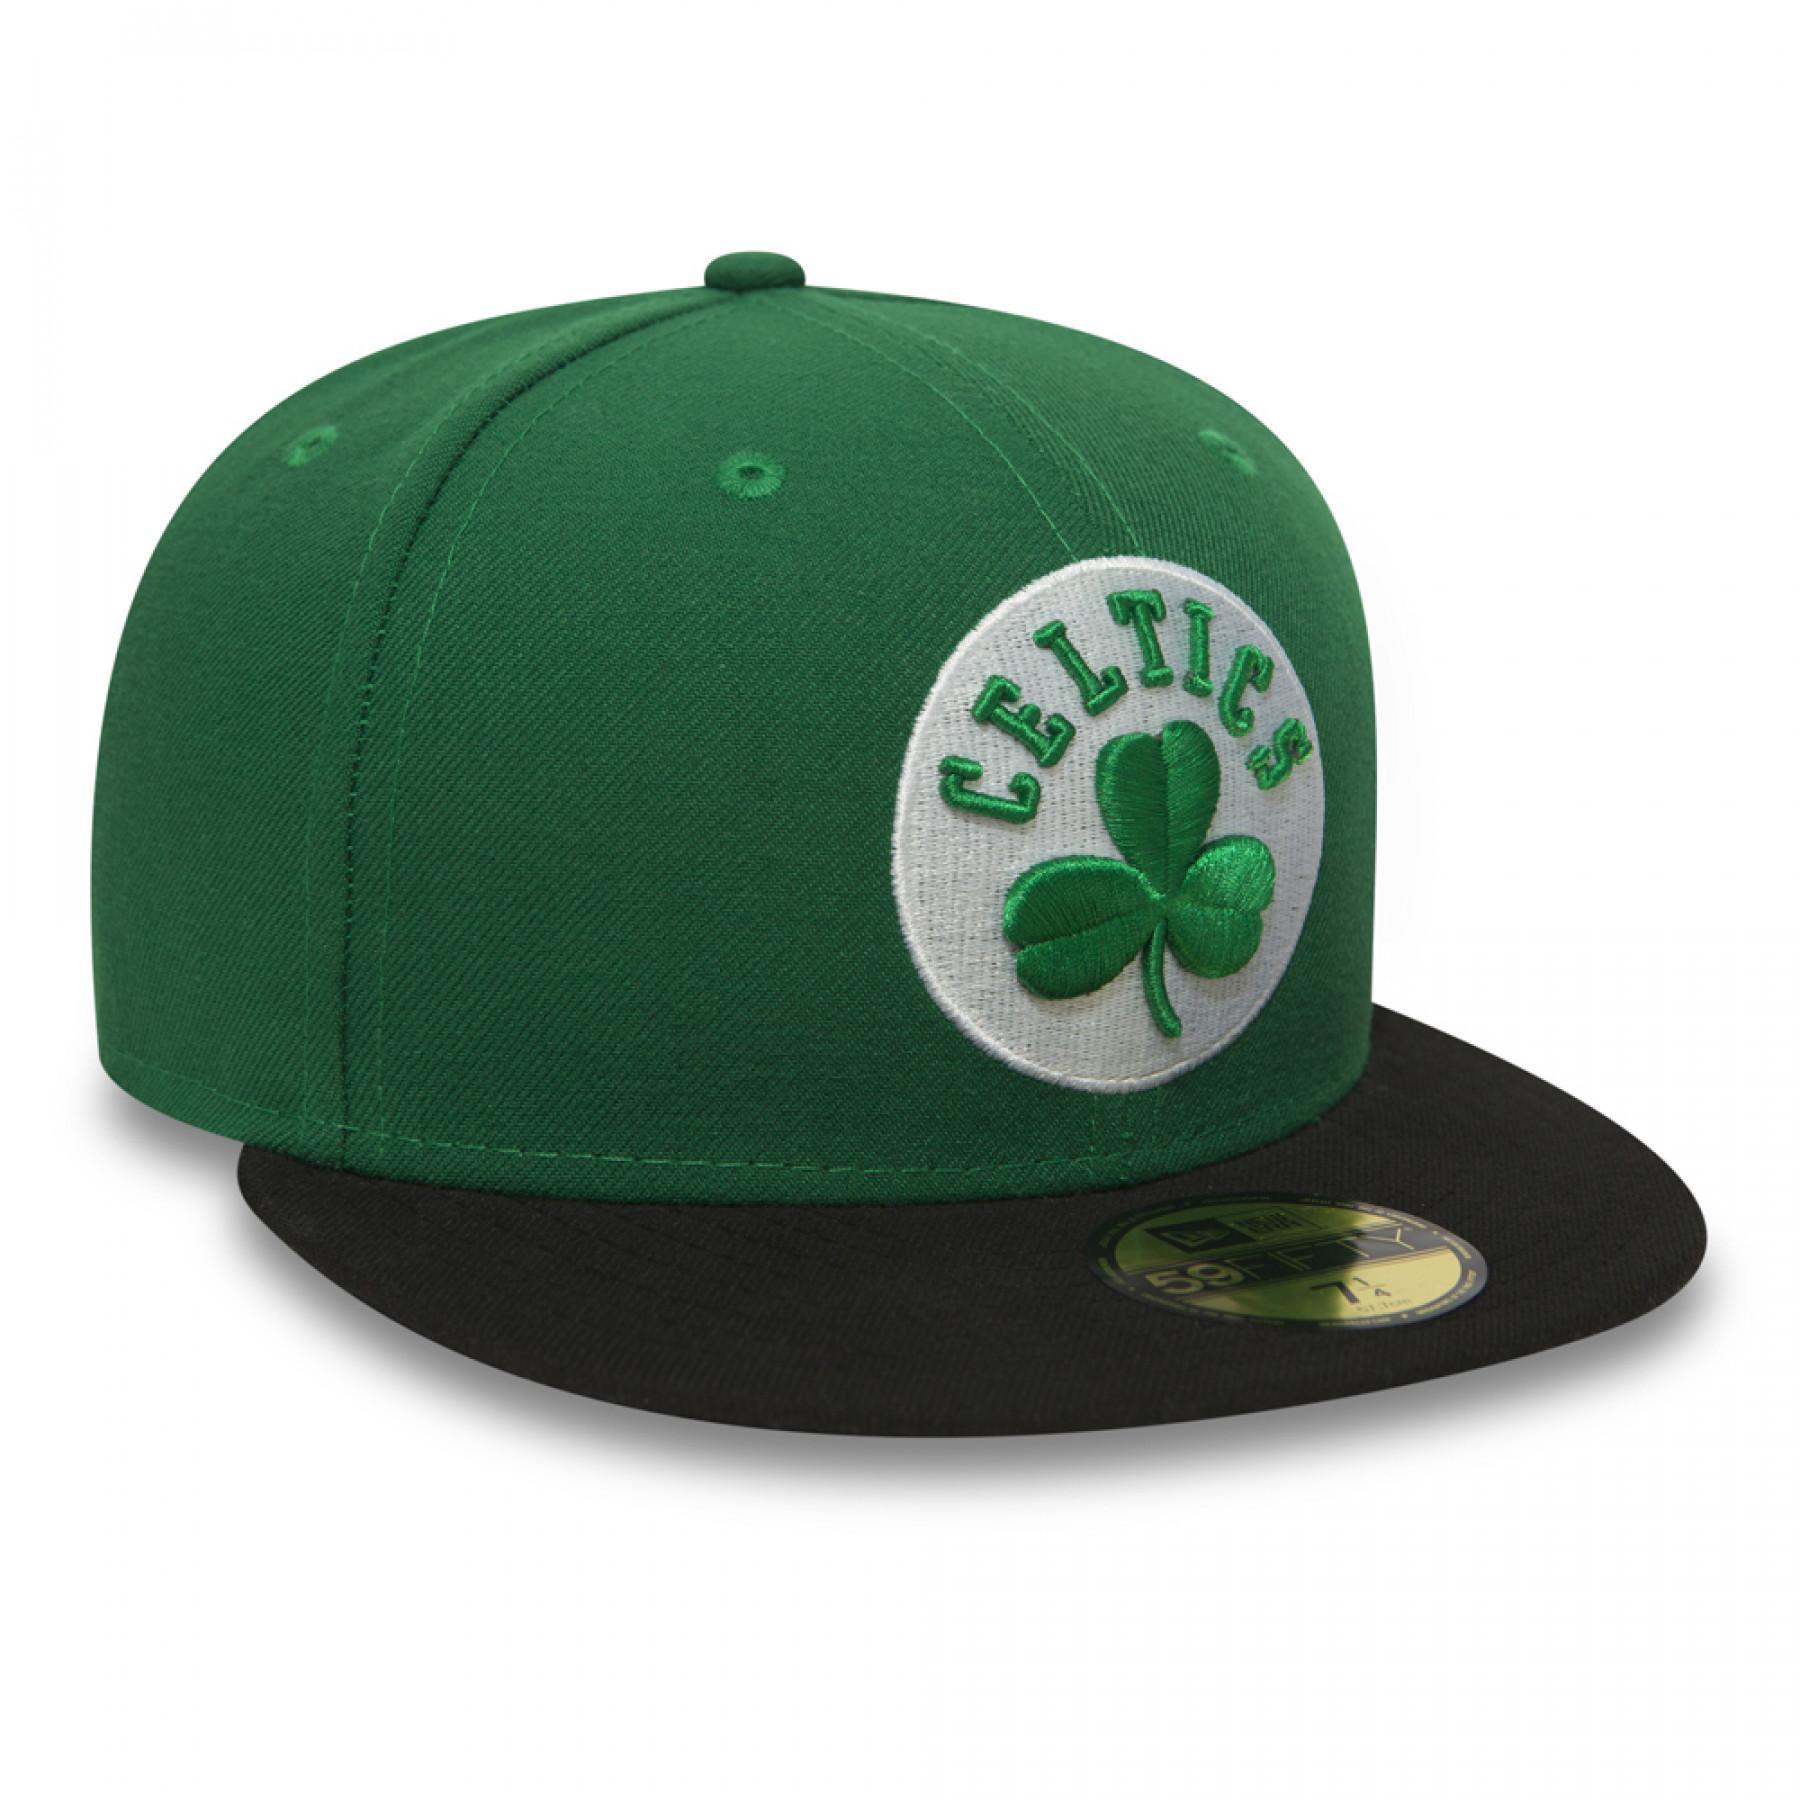 Casquette New Era essential 59fifty Boston Celtics